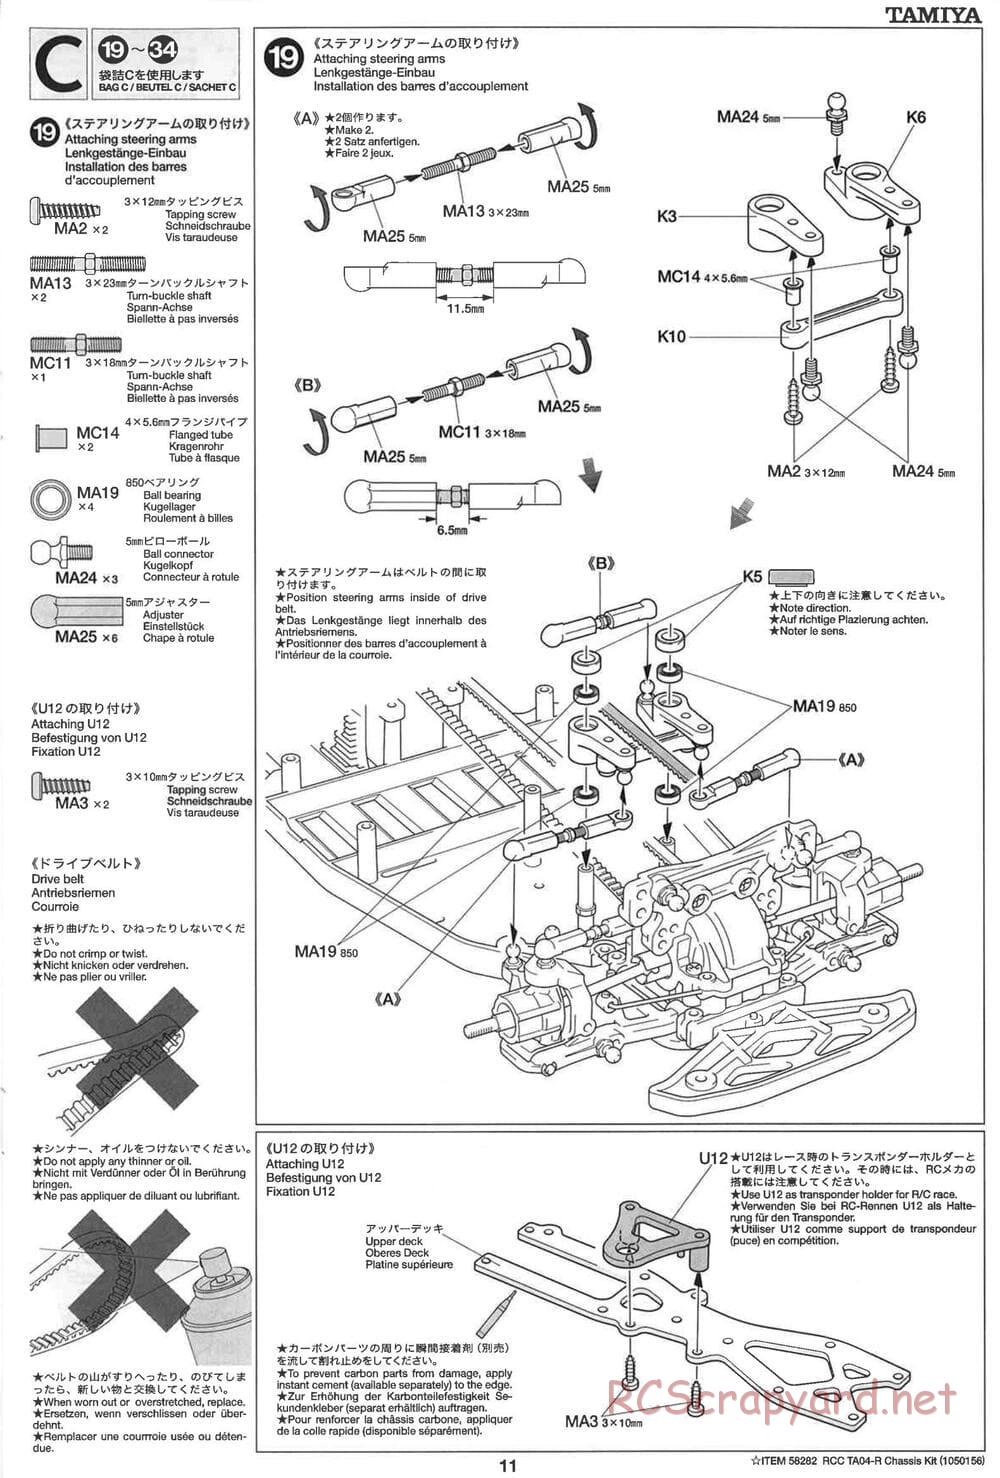 Tamiya - TA-04R Chassis - Manual - Page 11